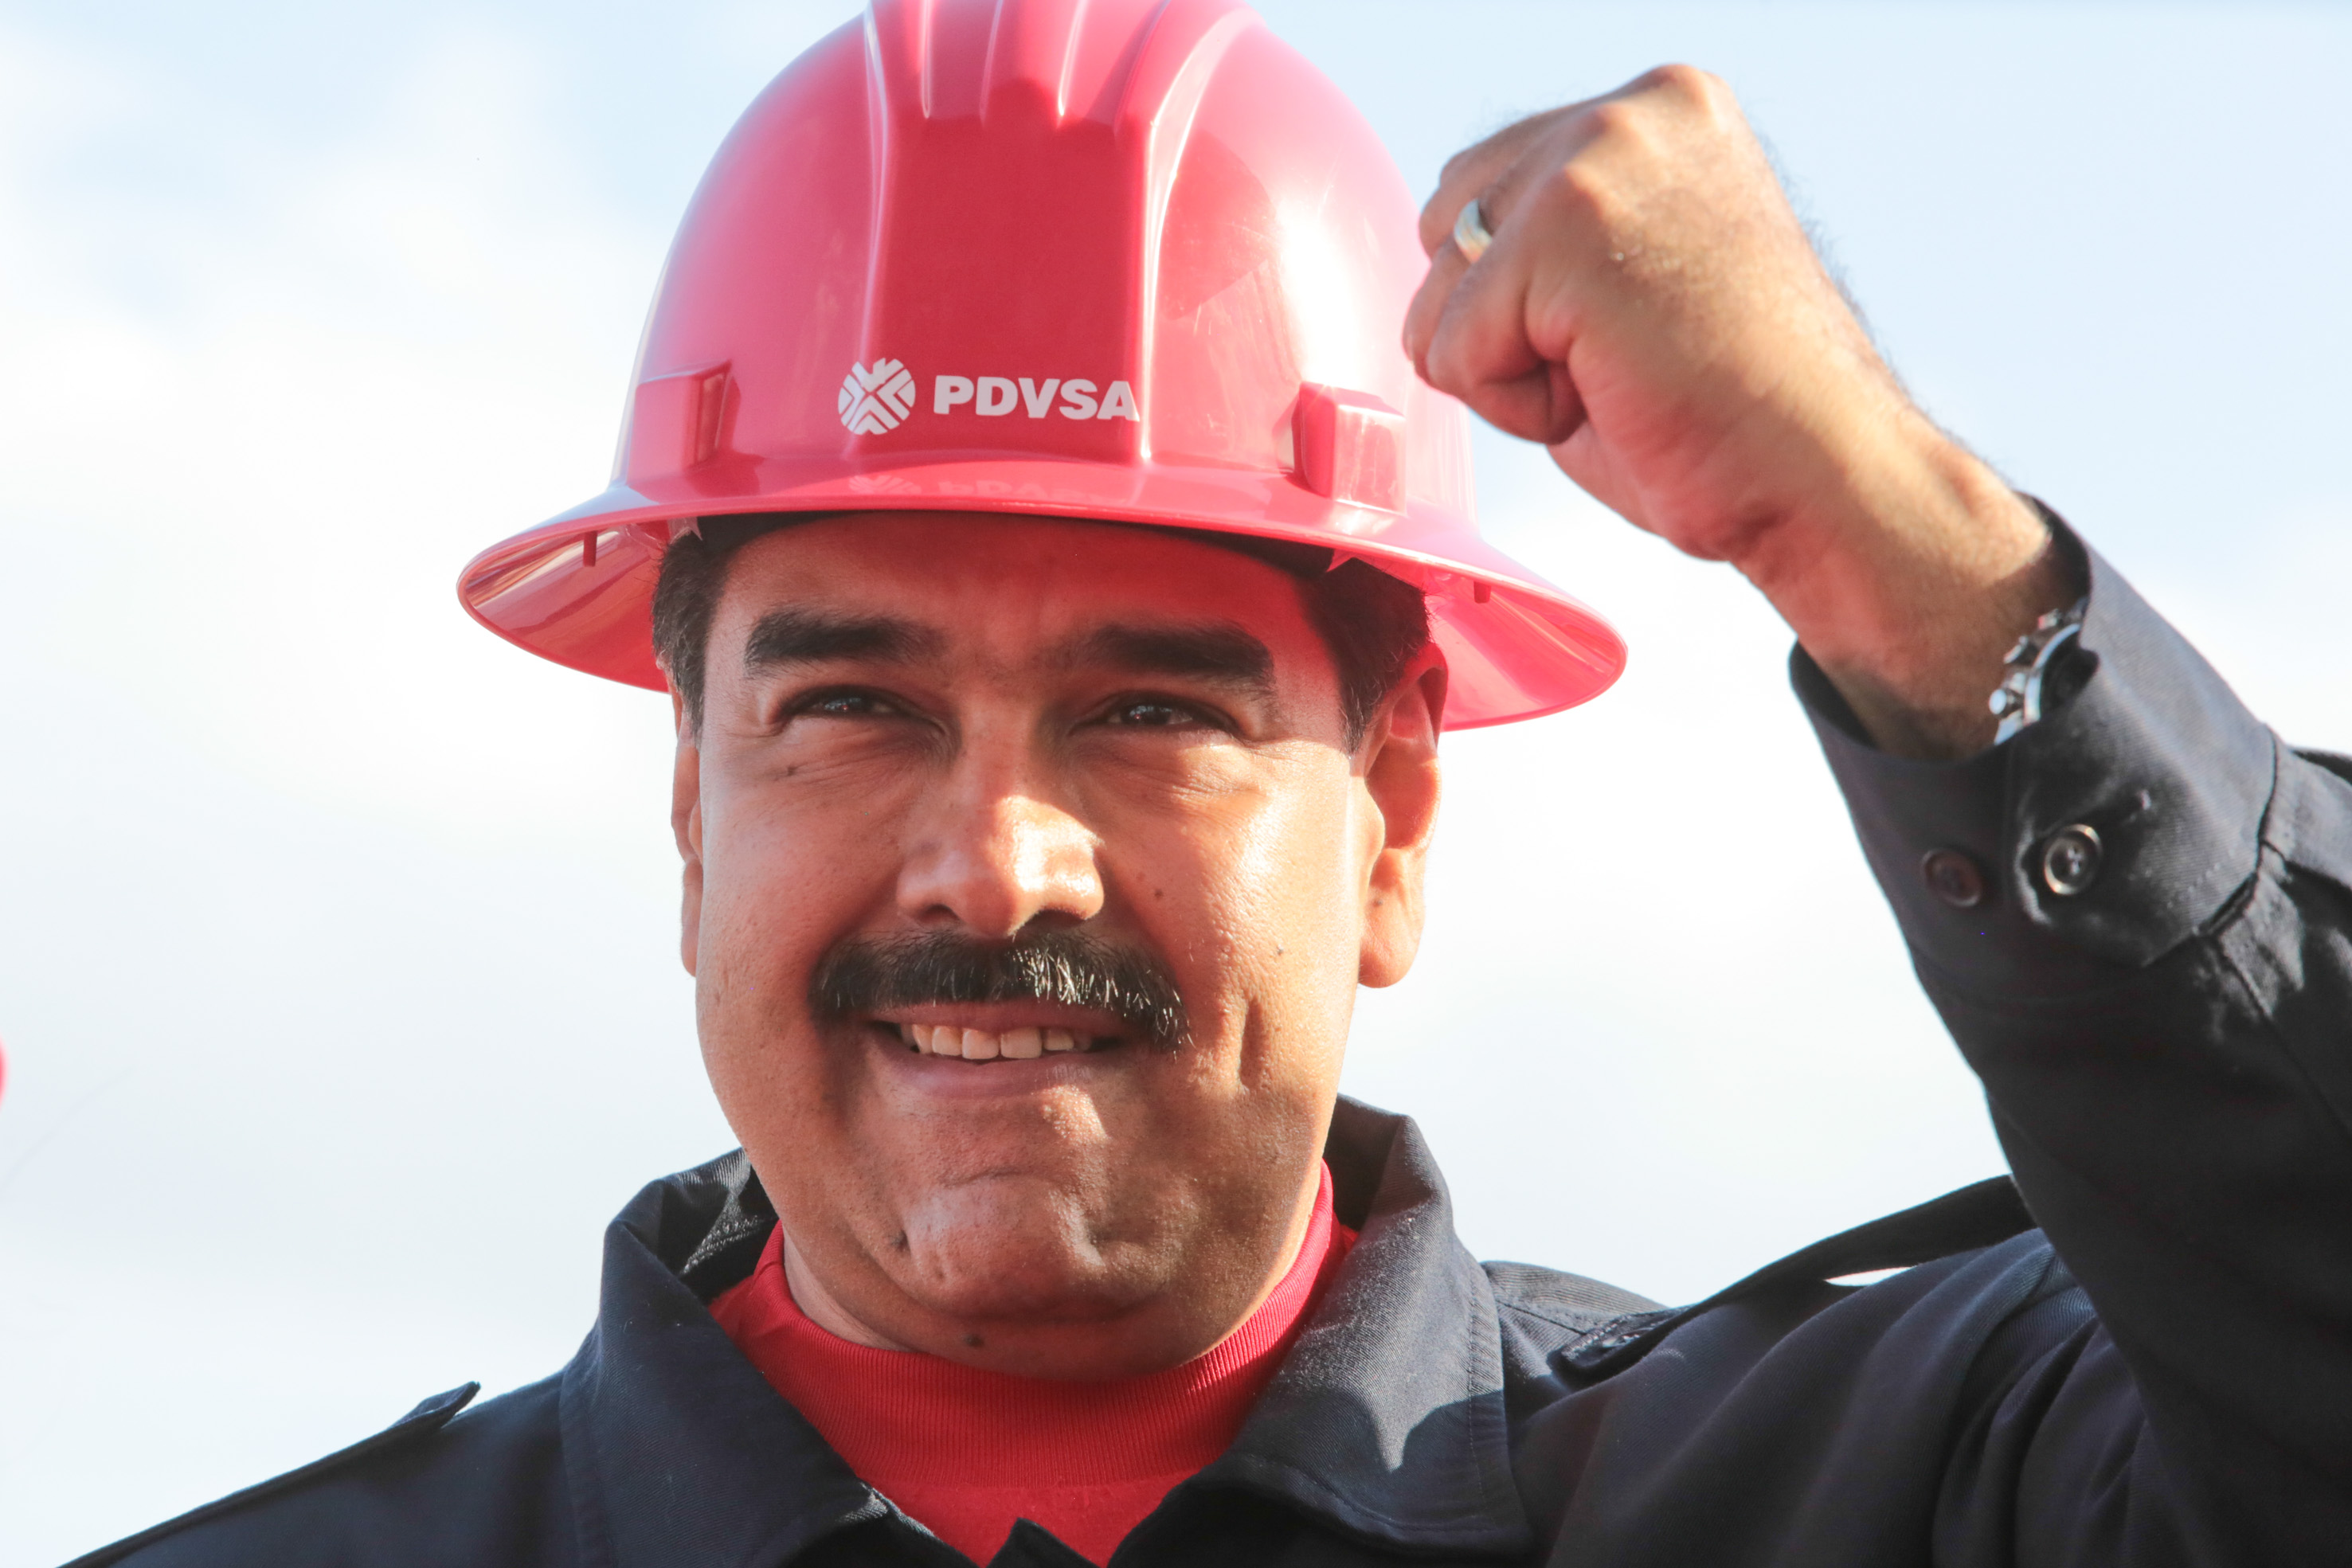 La “autocanibalización” de Pdvsa: Una Venezuela en bancarrota le pide petróleo gratis a sus socios